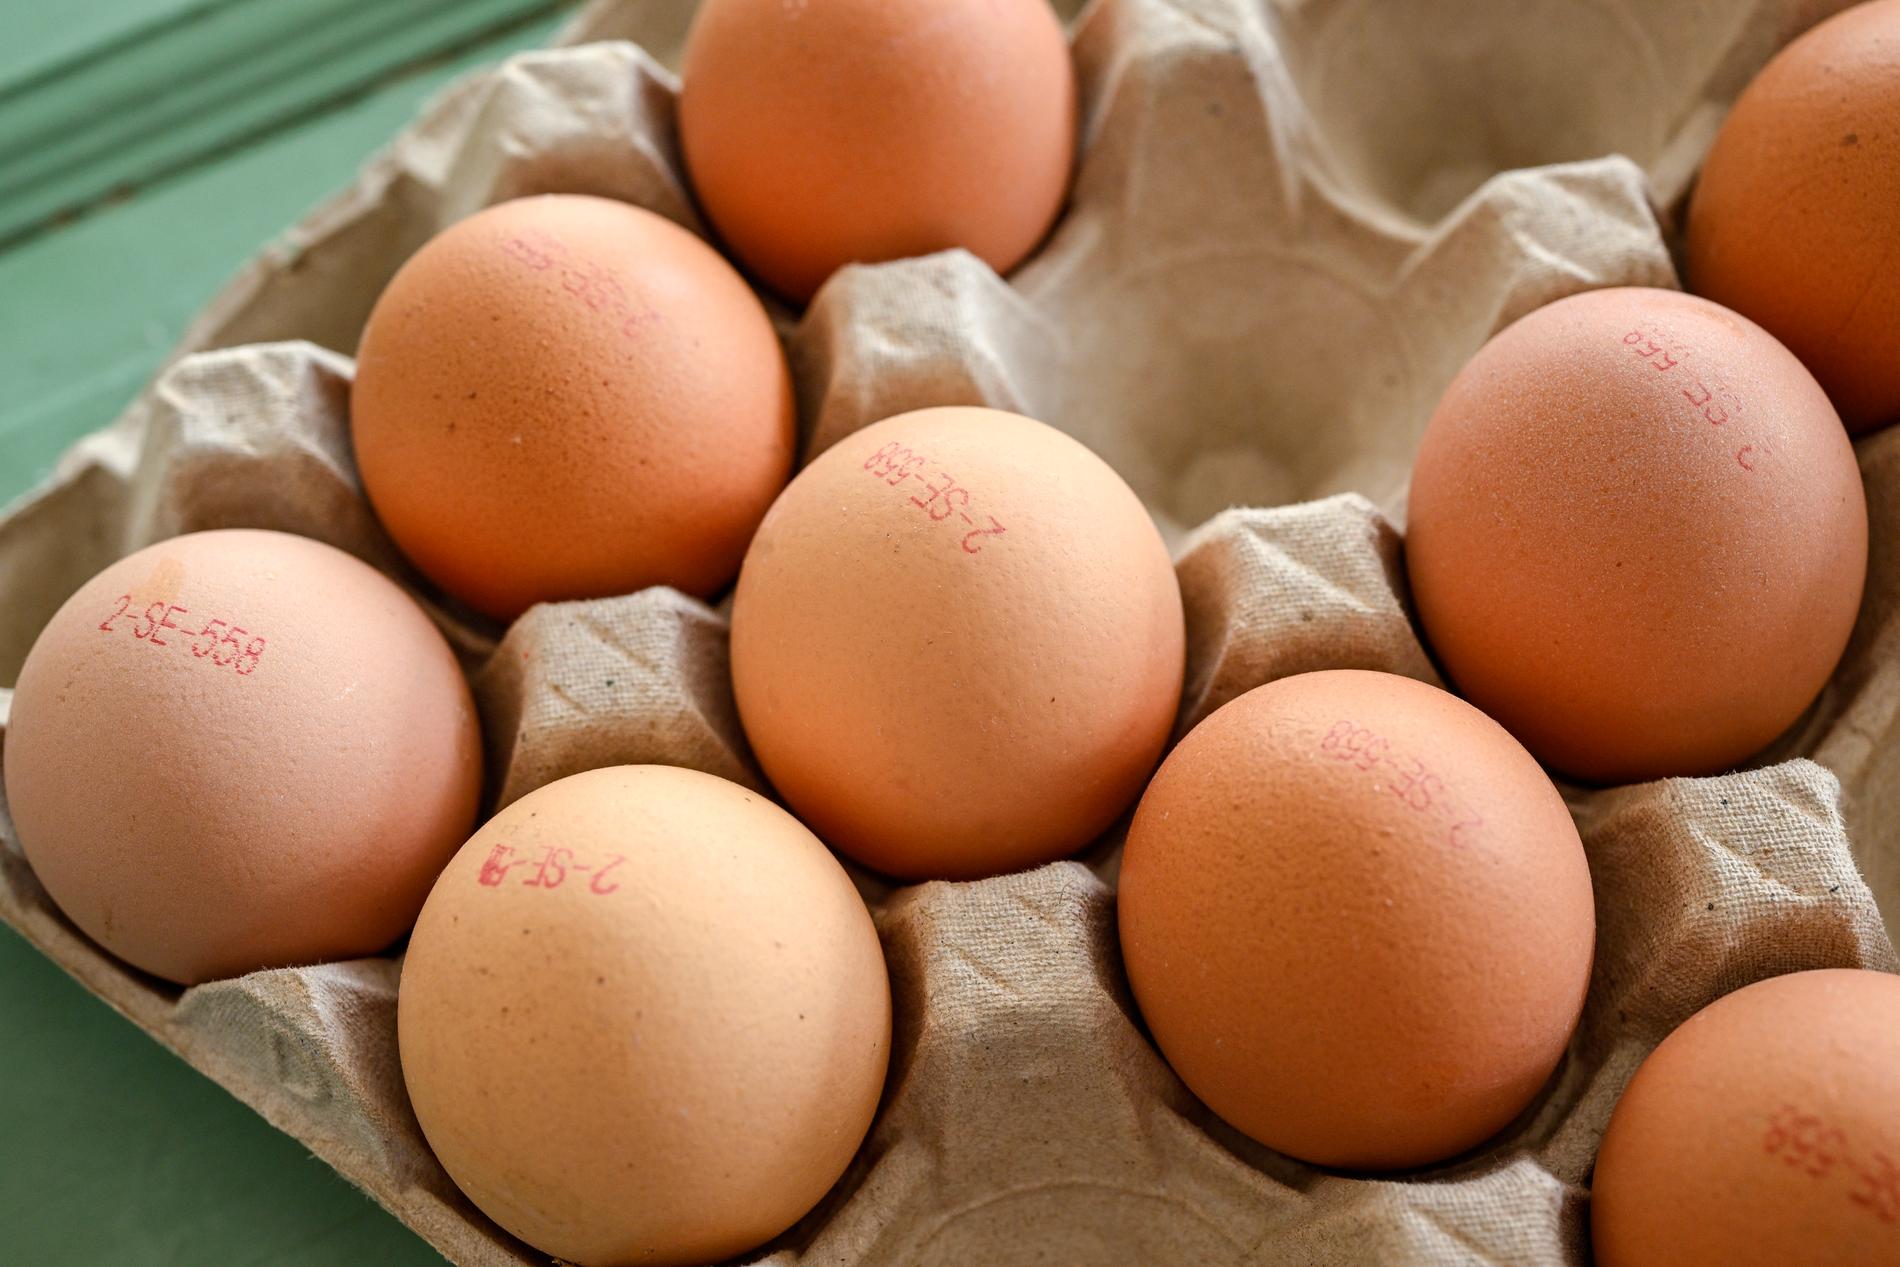 Ovanligt många återkallade ägg i år. 